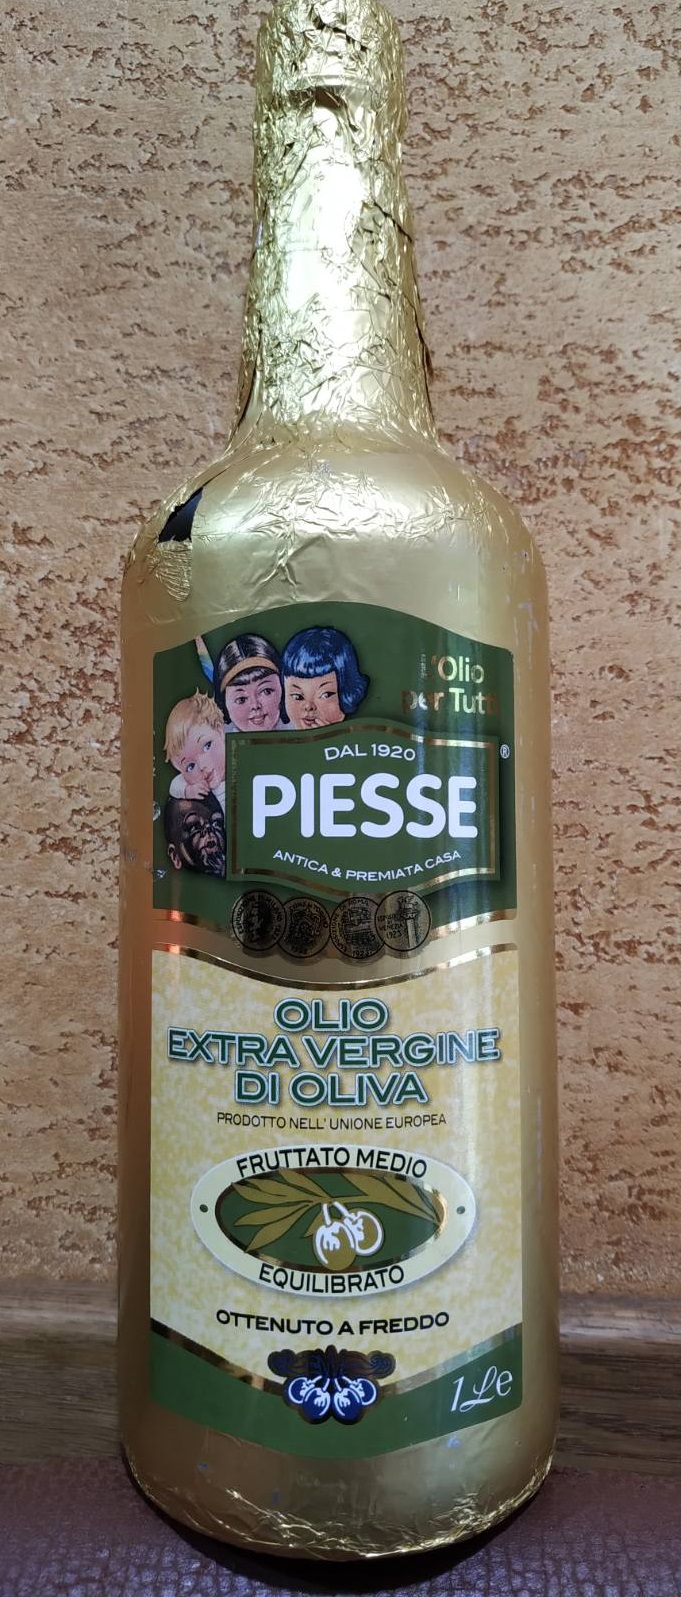 Оливковое масло Piesse Fruttato Medio Equilibrato Olio Extra Vergine di oliva Италия 1л Первый холодный отжим